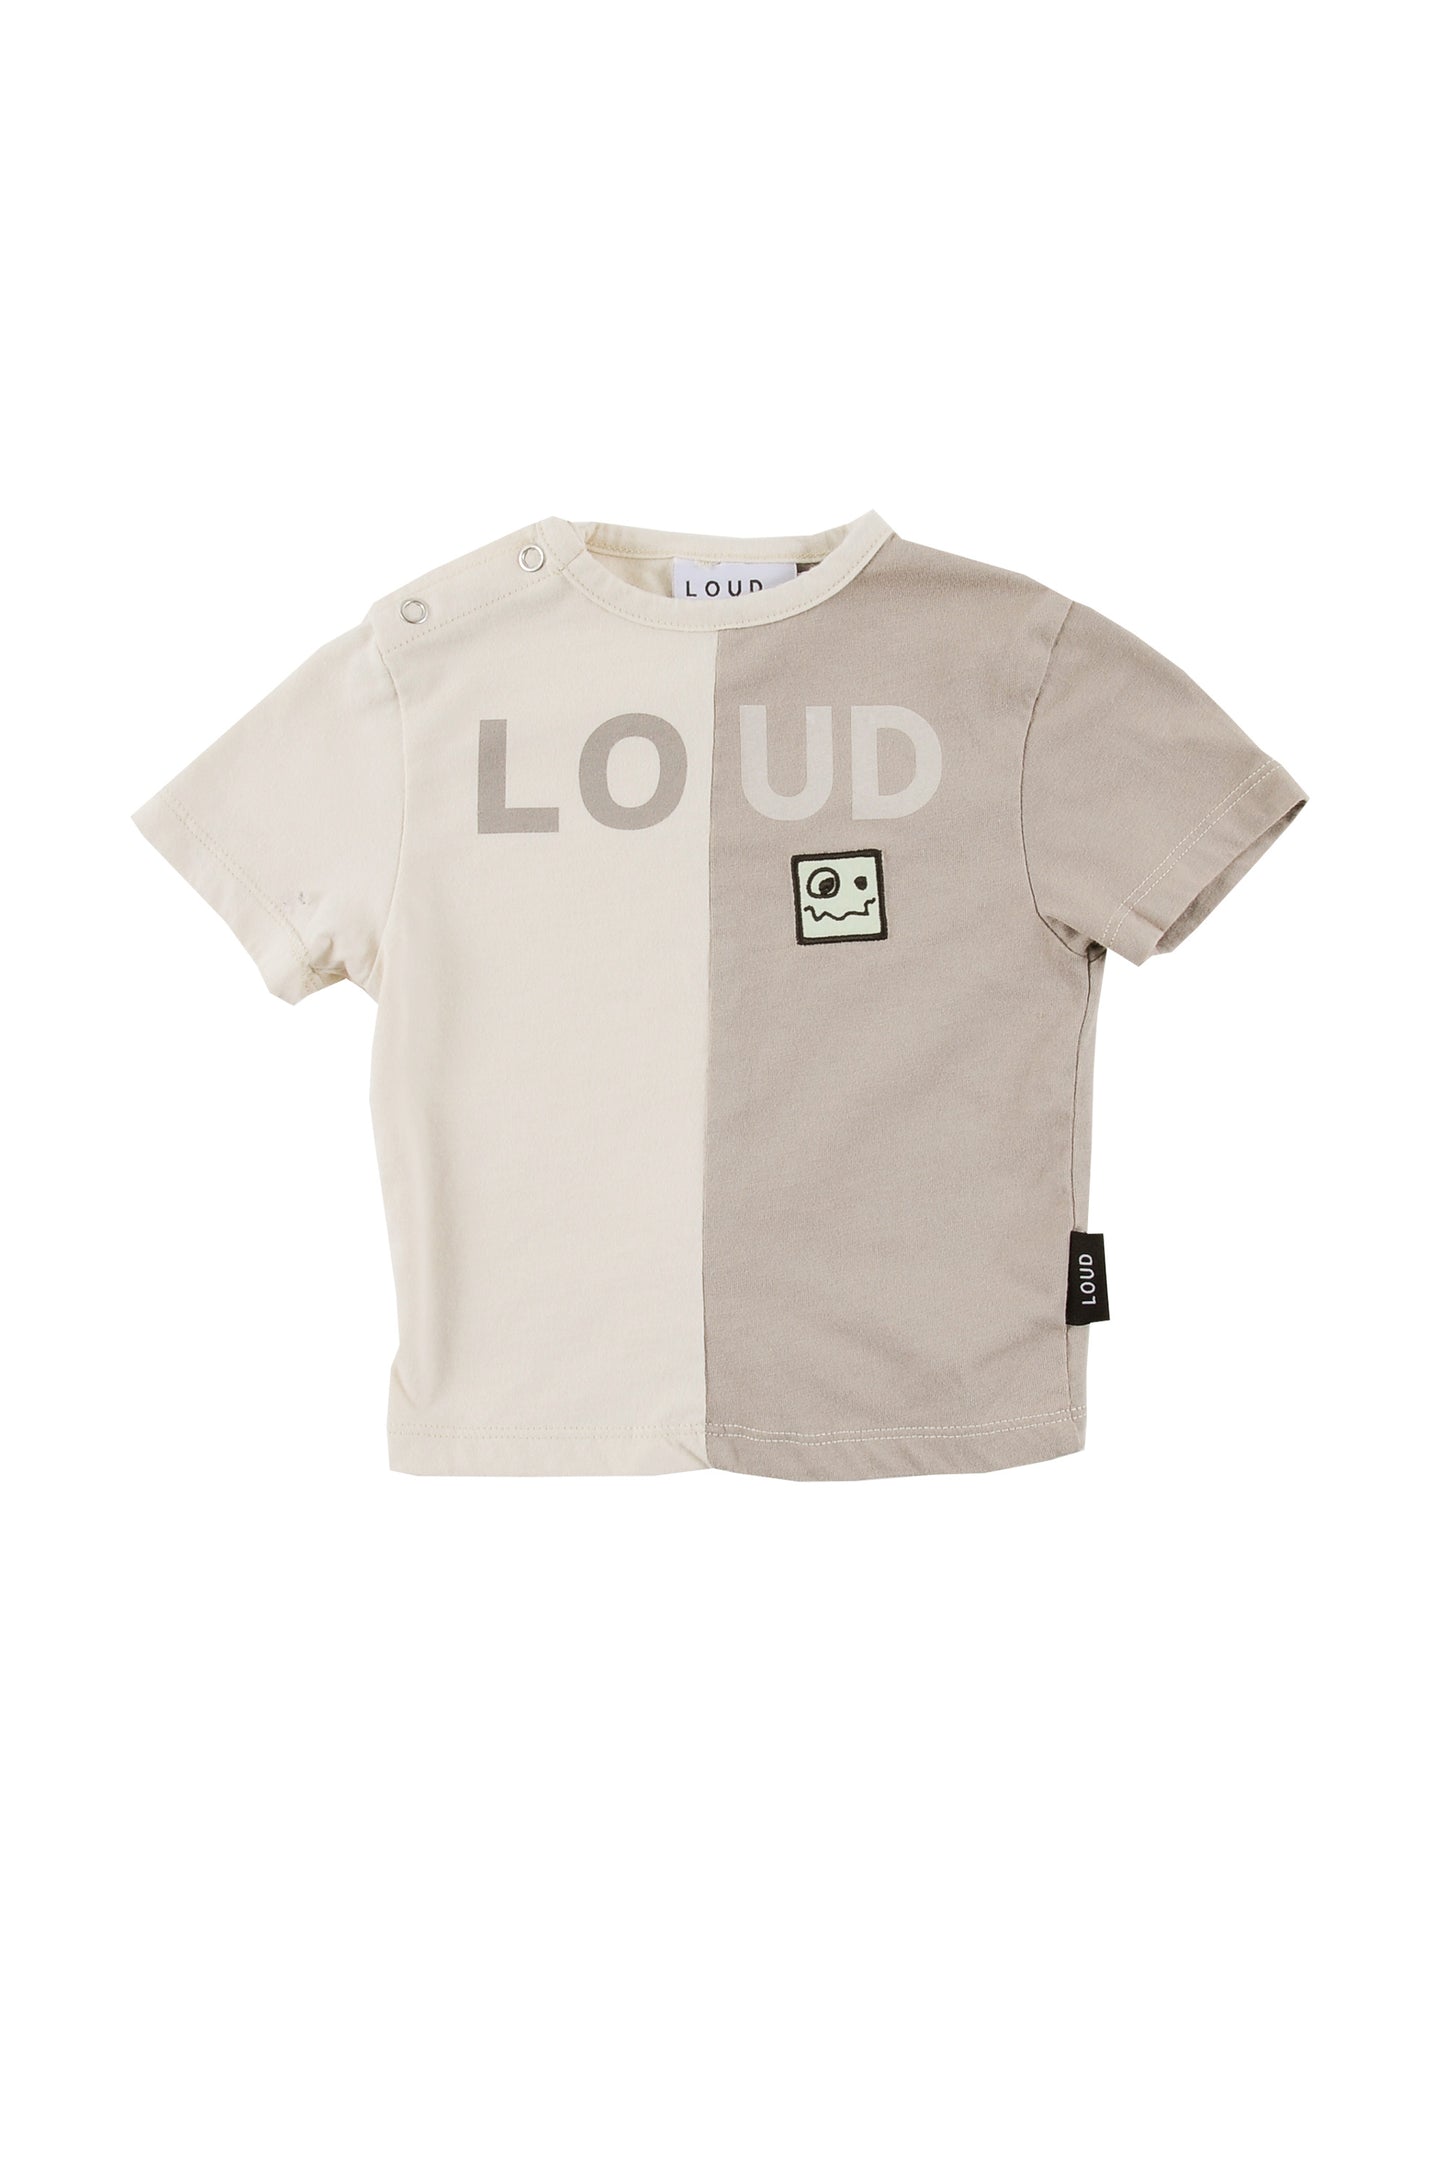 Positive T-shirt 2 tone Sand/Zinc pigment dye